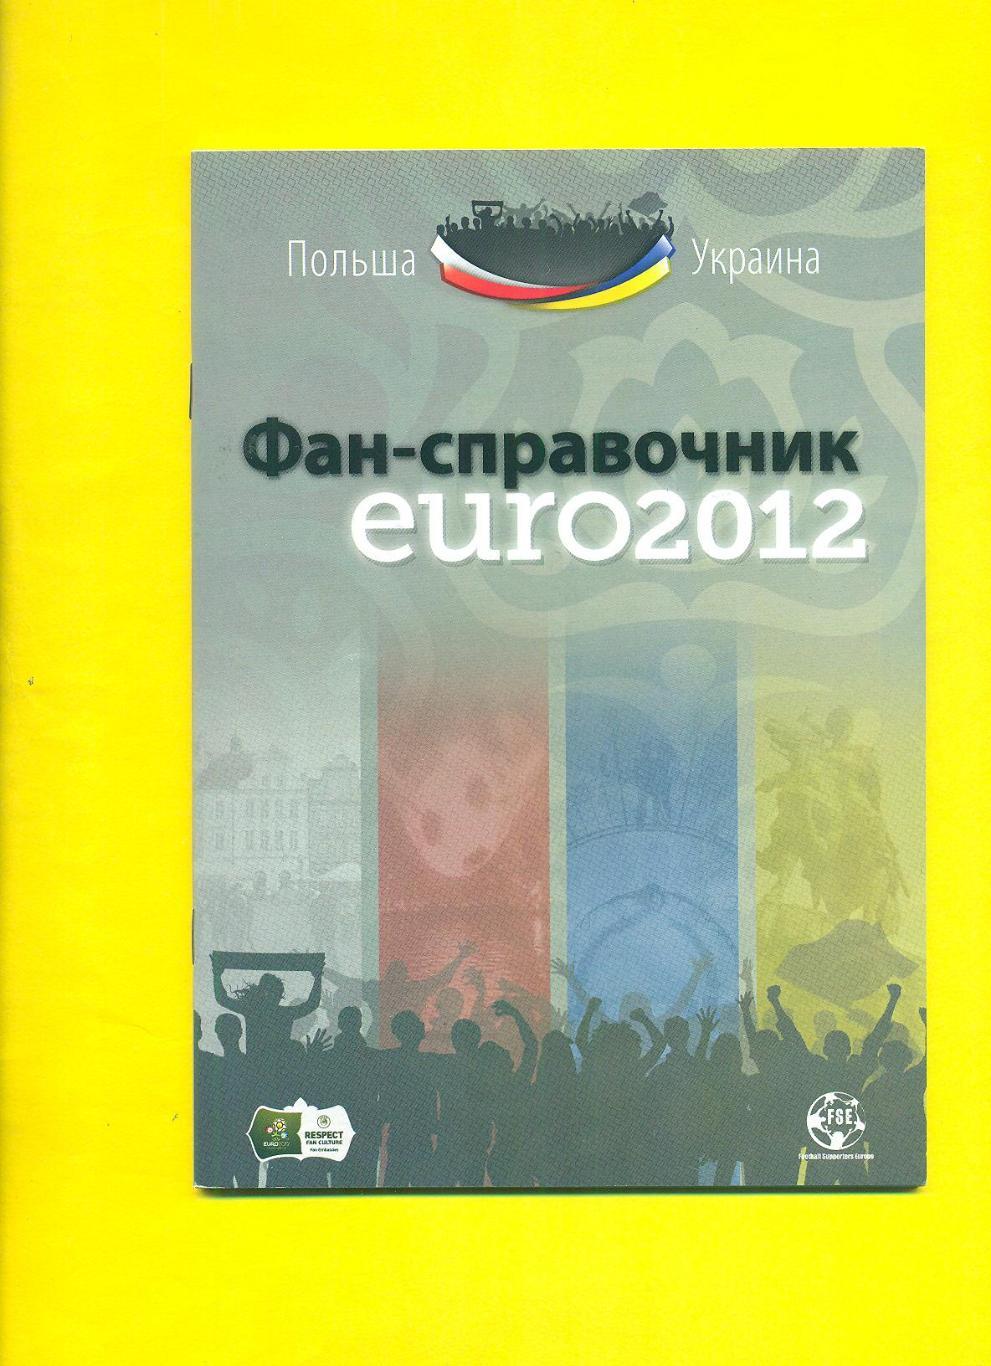 Киев.ЕВРО-2012.Украина,Швеция,Франция,Англия(2)